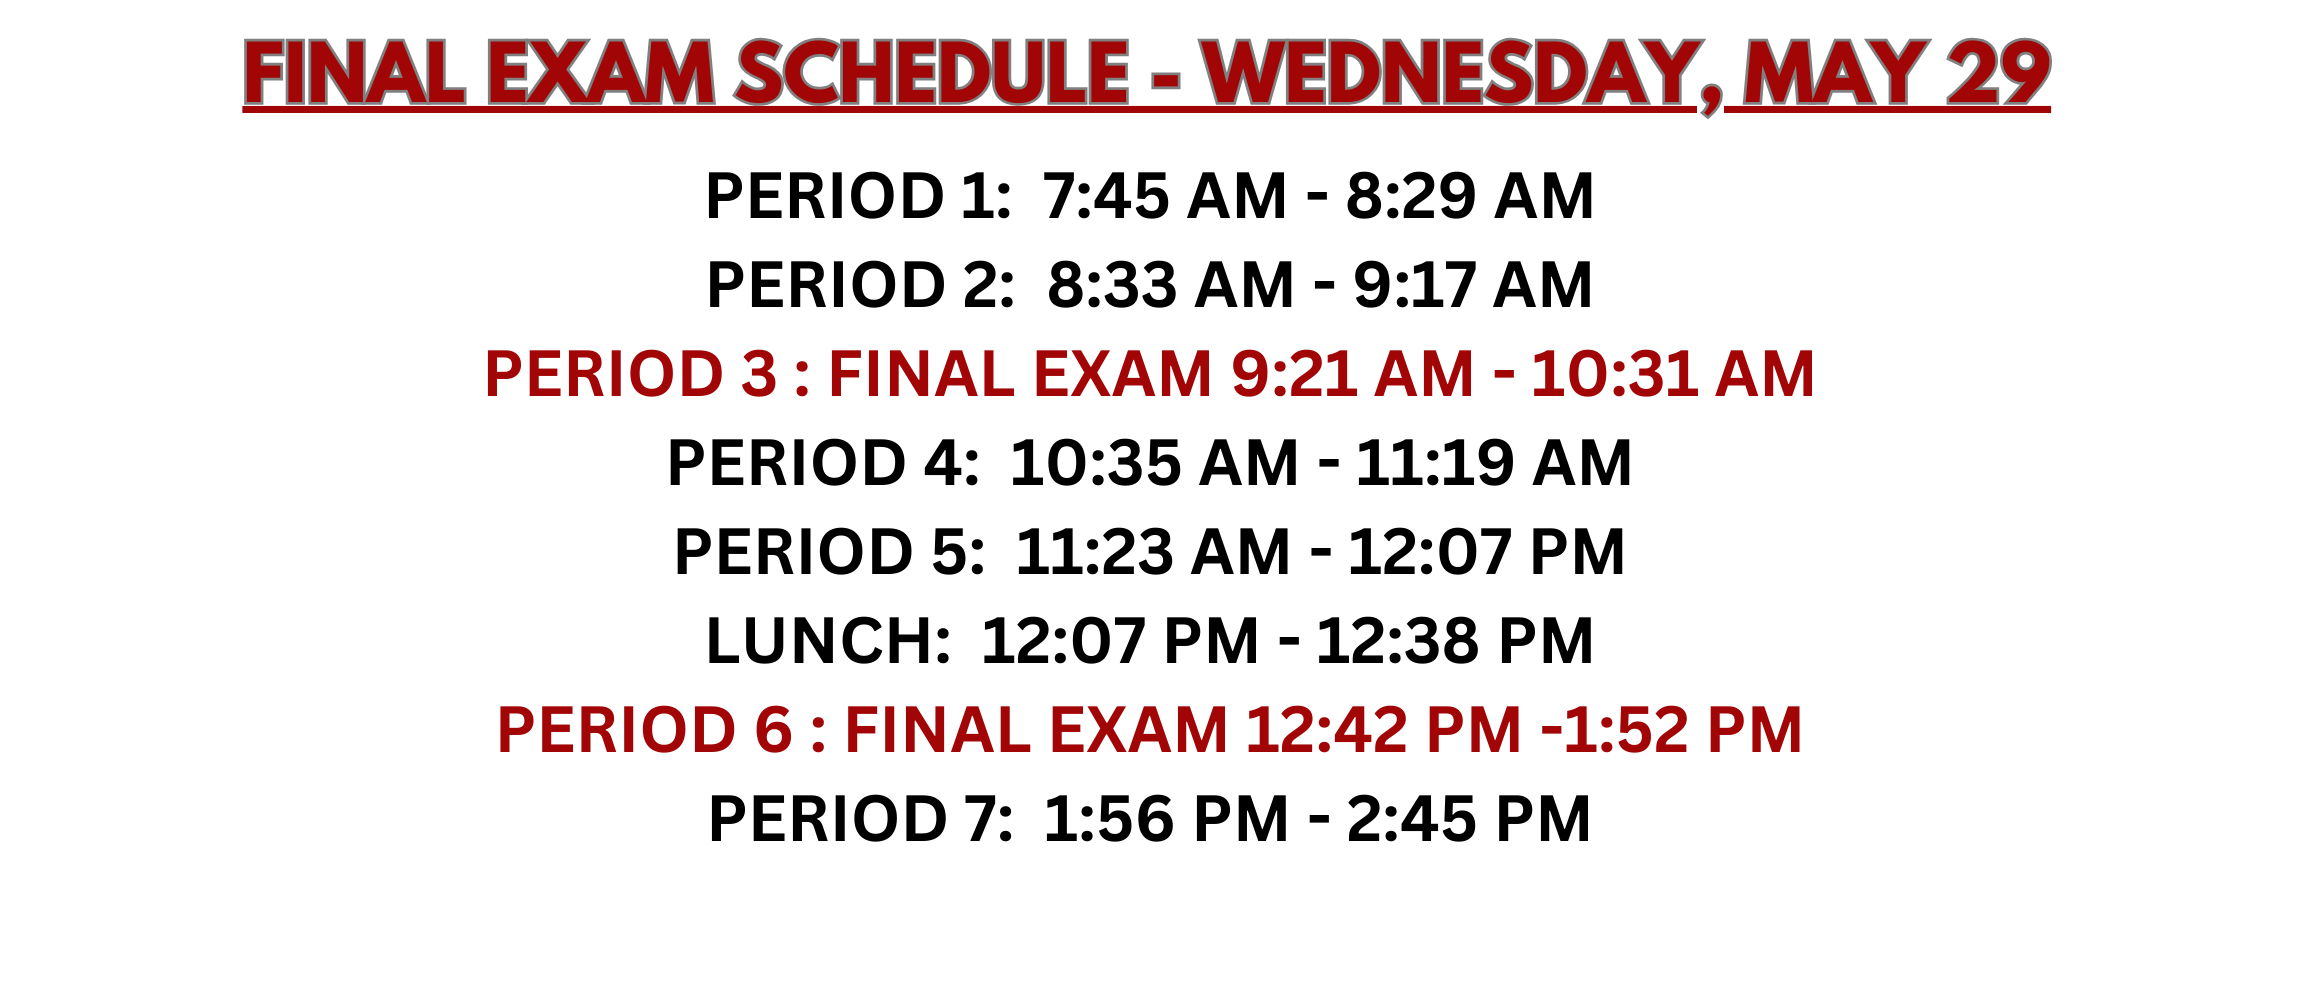 Wednesday Final Exam Schedule